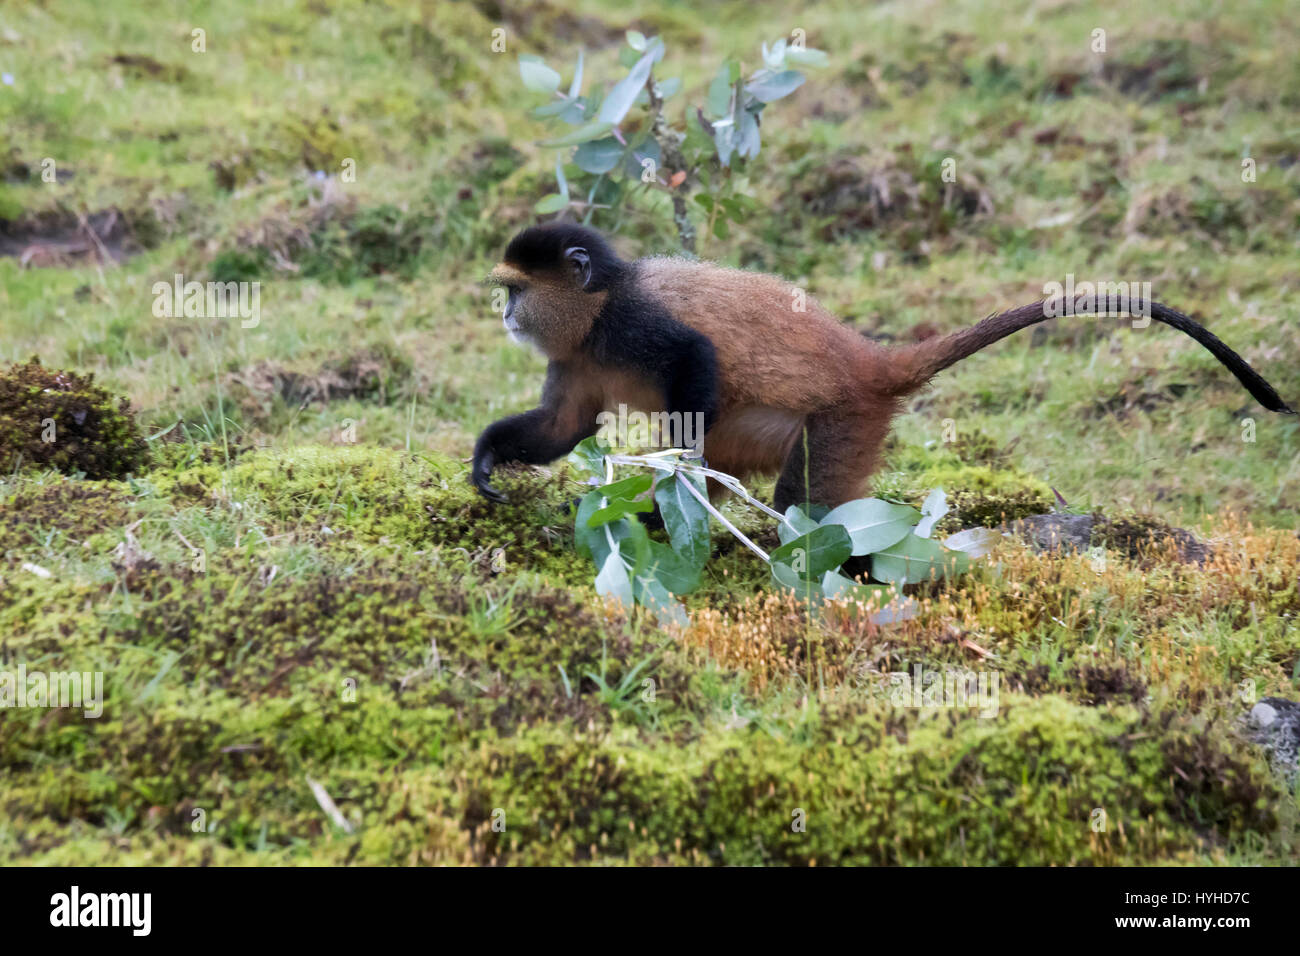 Endangered golden monkey foraging  in Virunga forest of Volcanoes National Park, Rwanda. Stock Photo